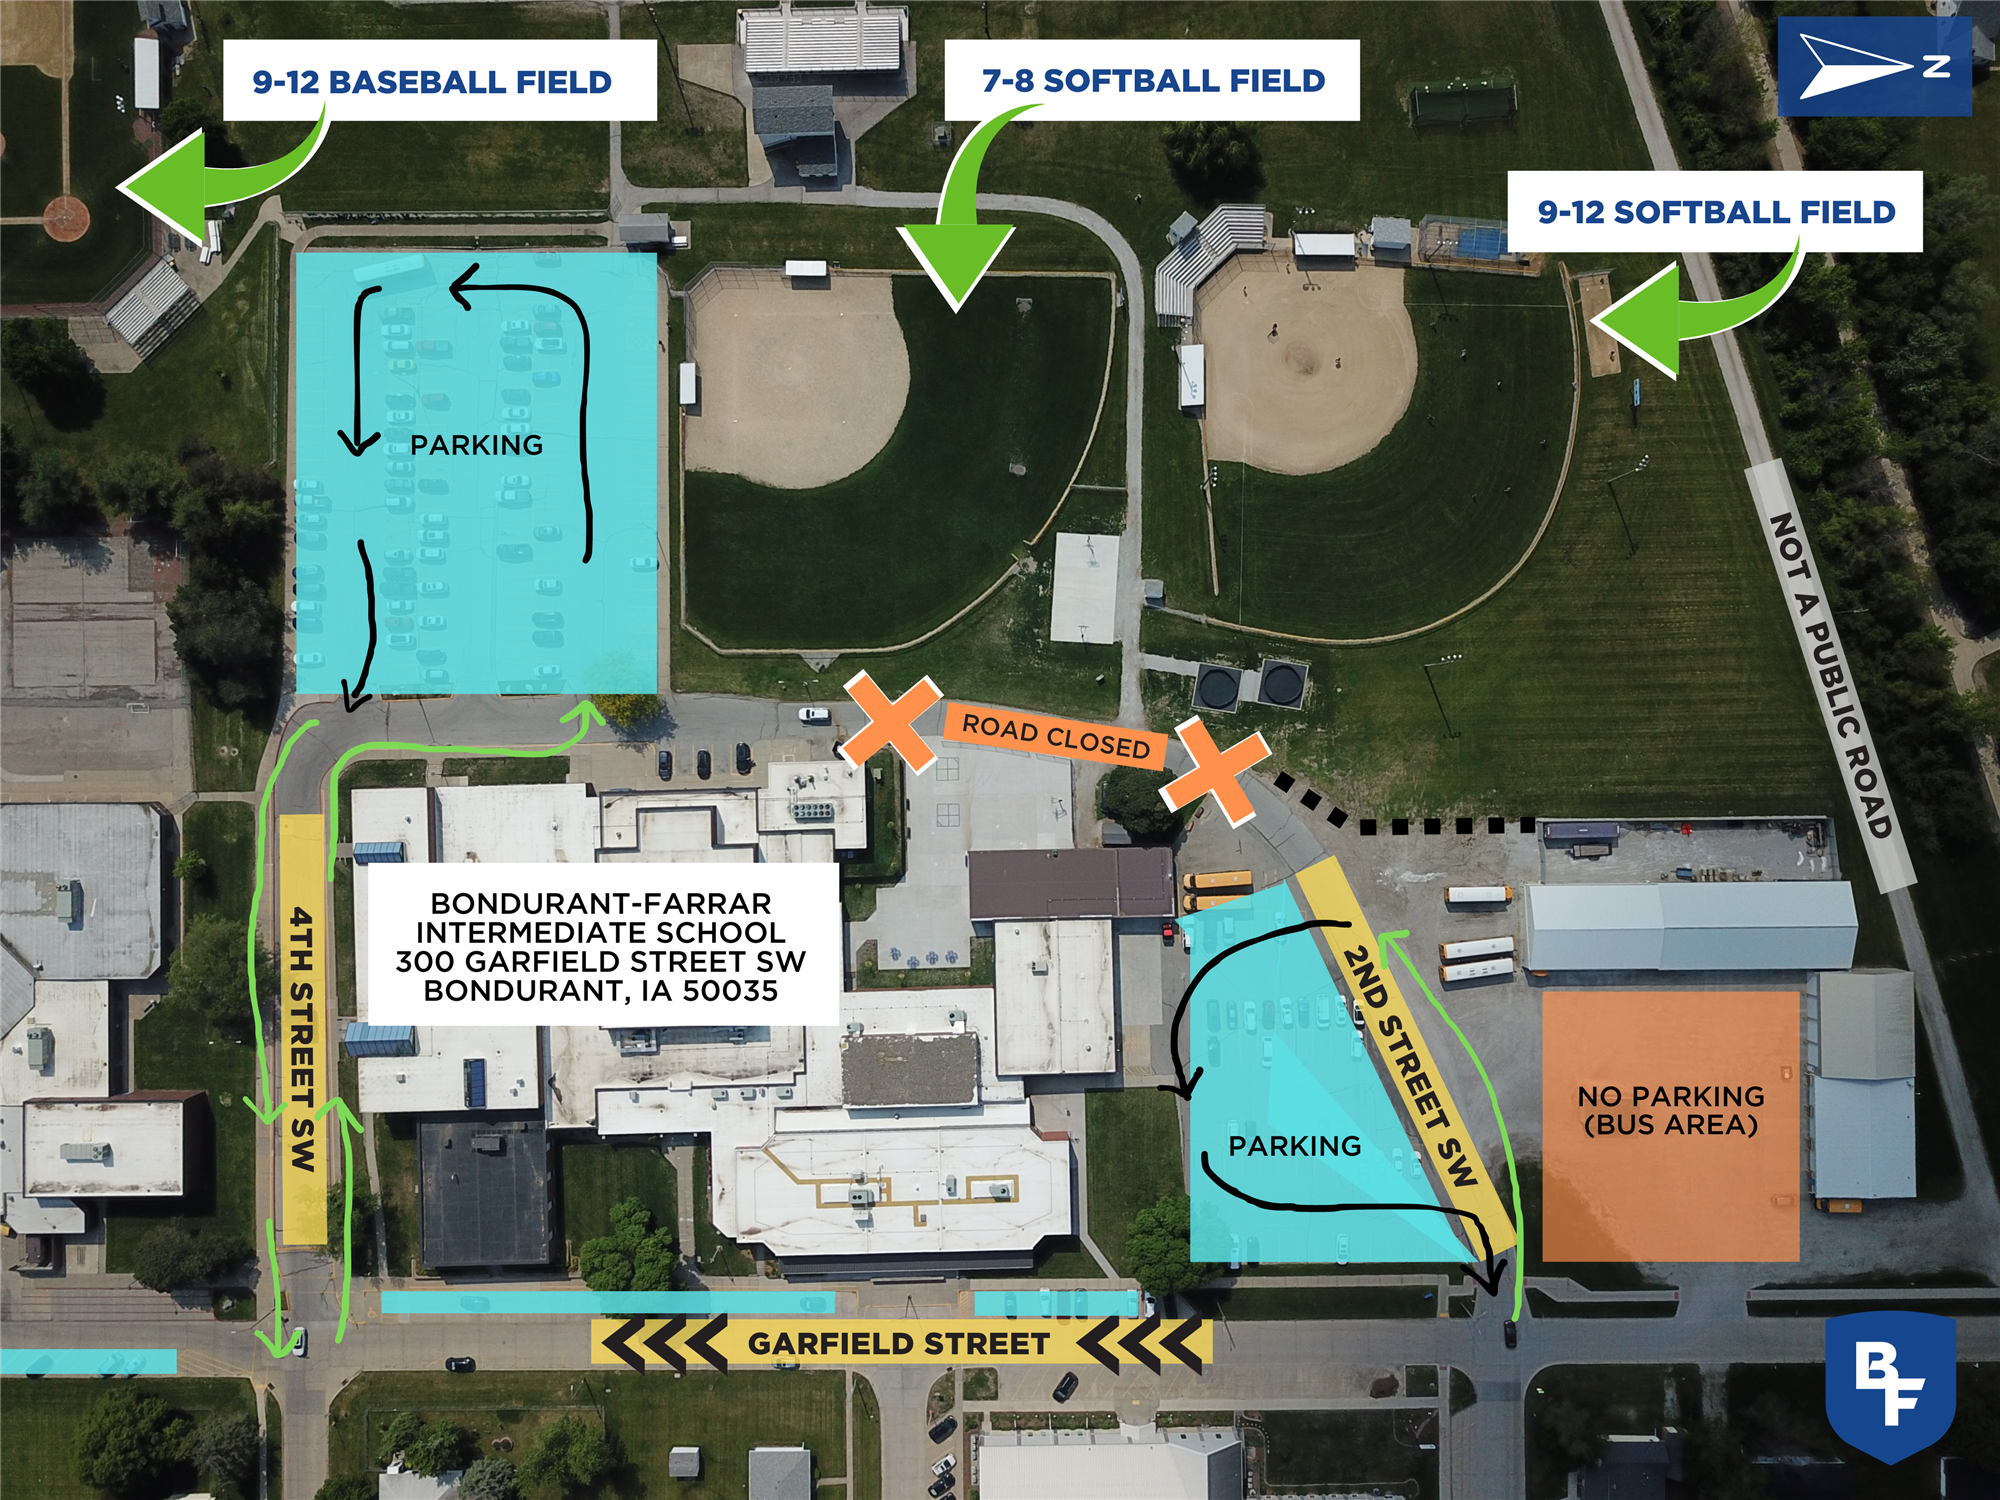 Overhead map of baseball and softball area